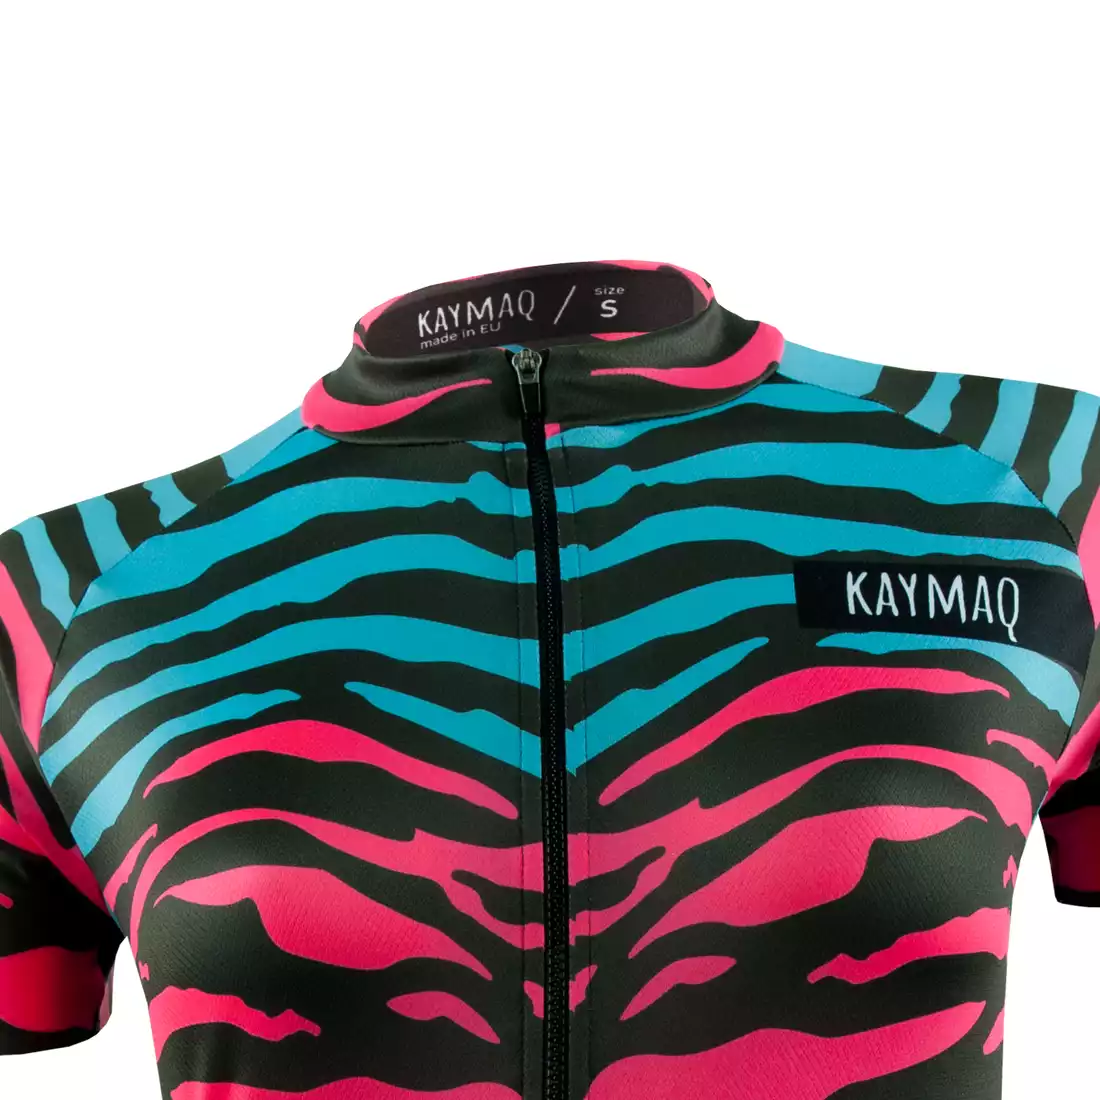 KAYMAQ DESIGN W1-W40 damska koszulka rowerowa krótki rękaw